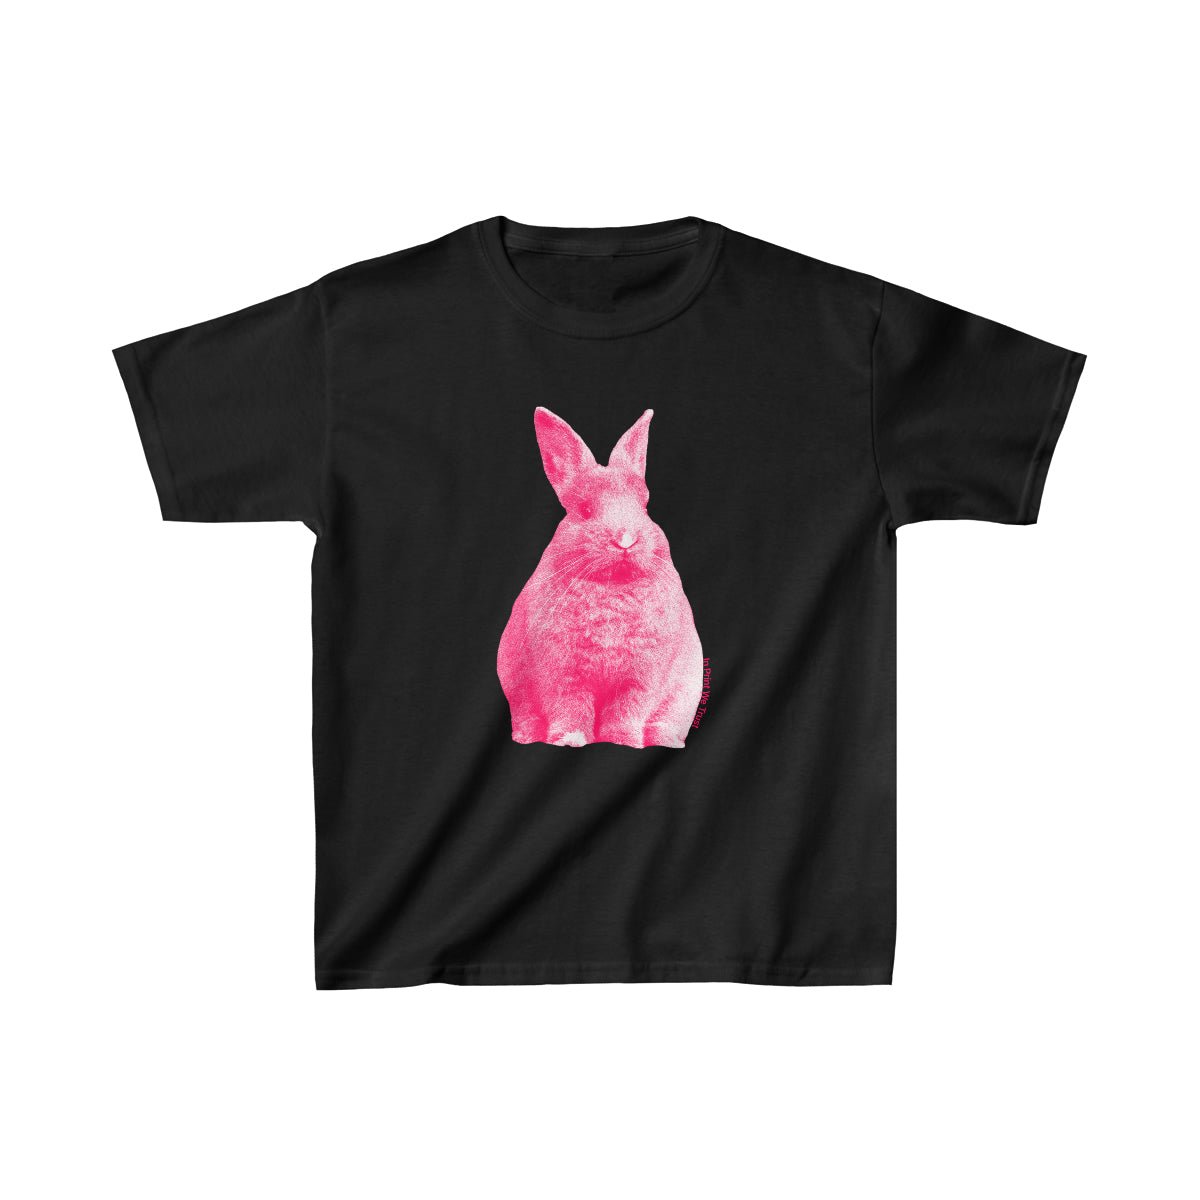 'Bunny Hop' baby tee - In Print We Trust